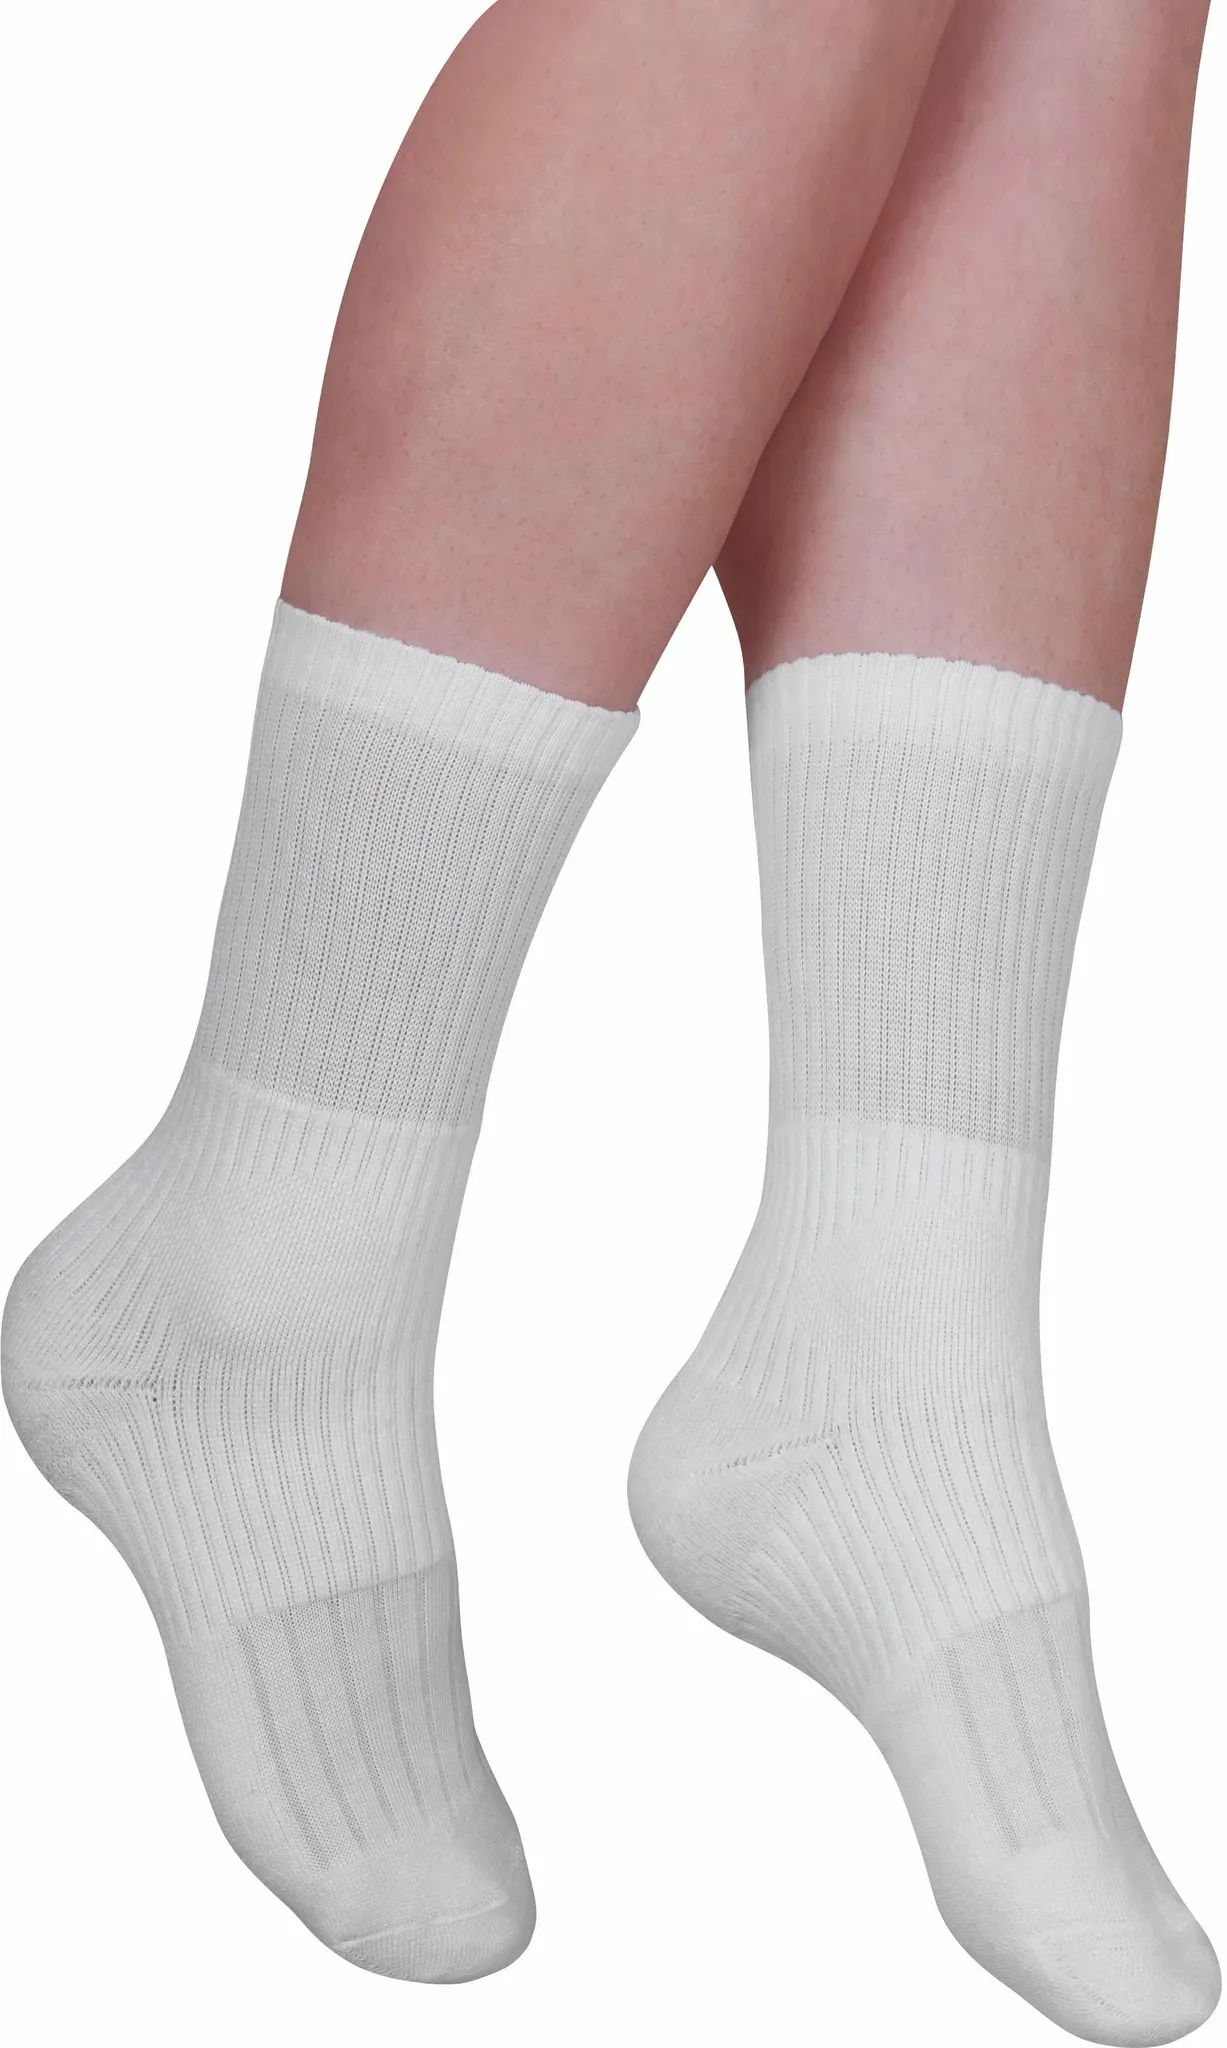 Strümpfe FUSSGUT "Sprungelenk Strumpf" Socken Gr. 3 (43/44/45), weiß Herren Strümpfe 2 Paar, wirkt wie eine Bandage